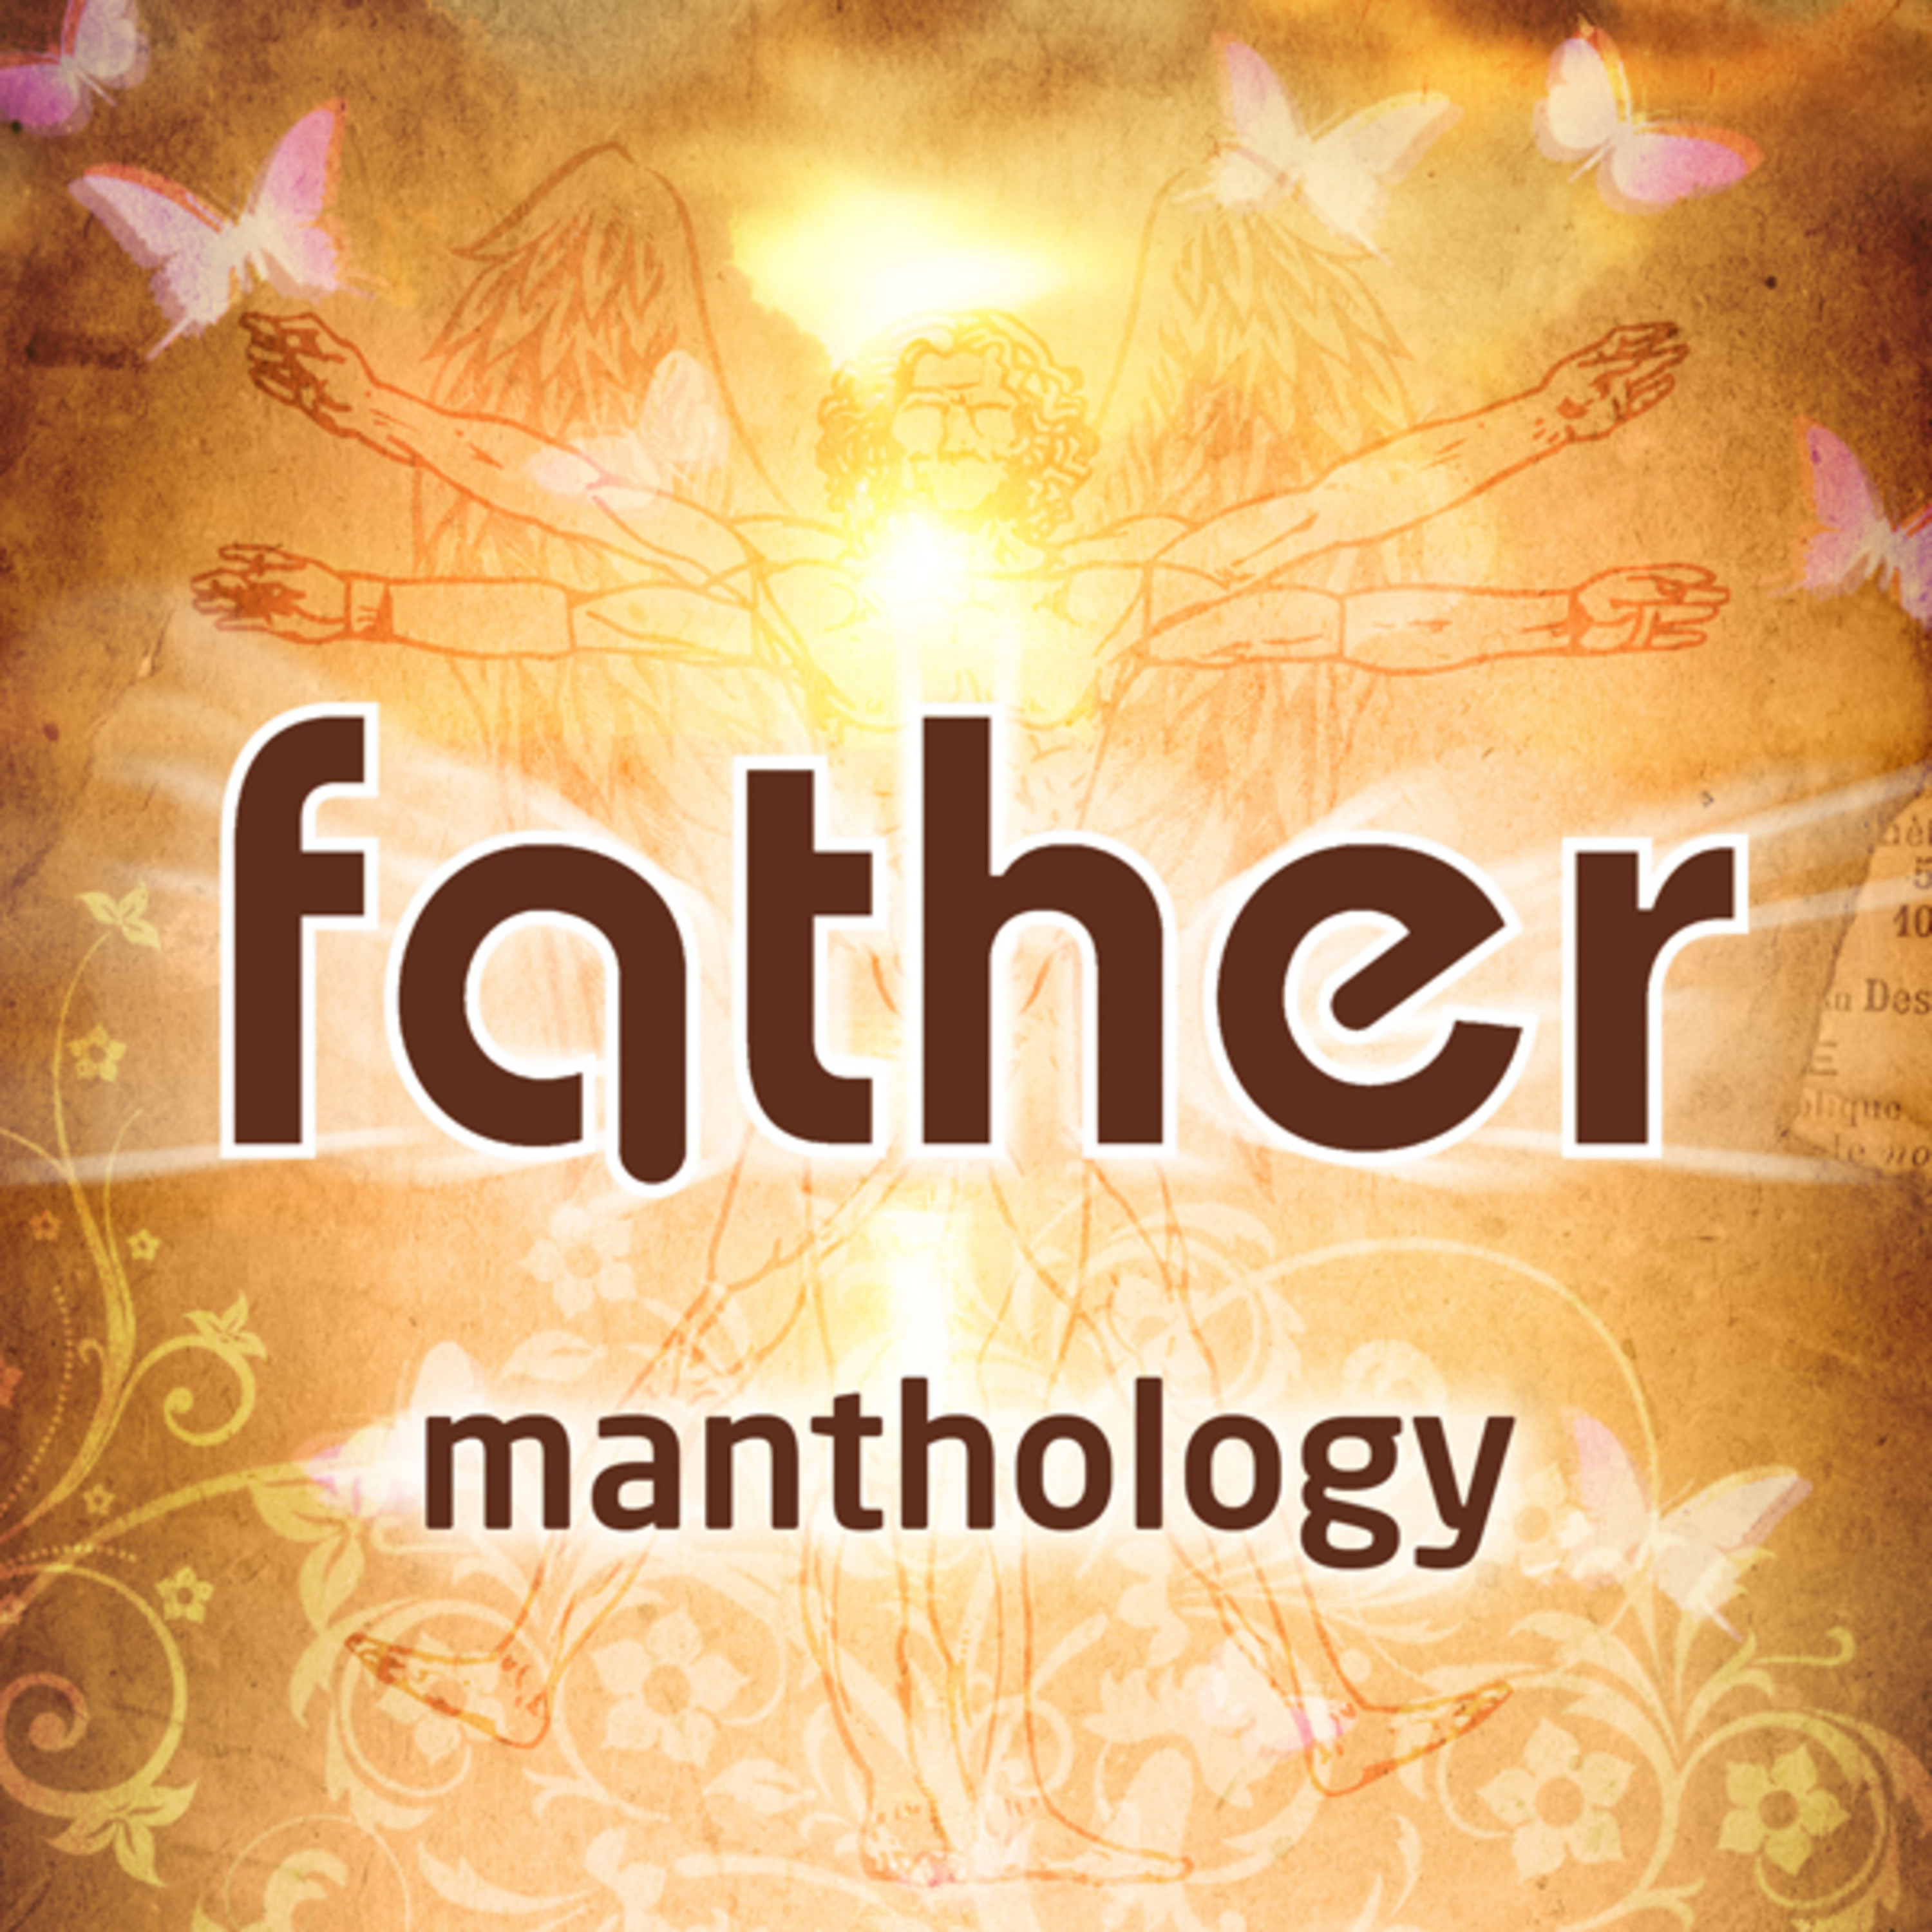 Manthology